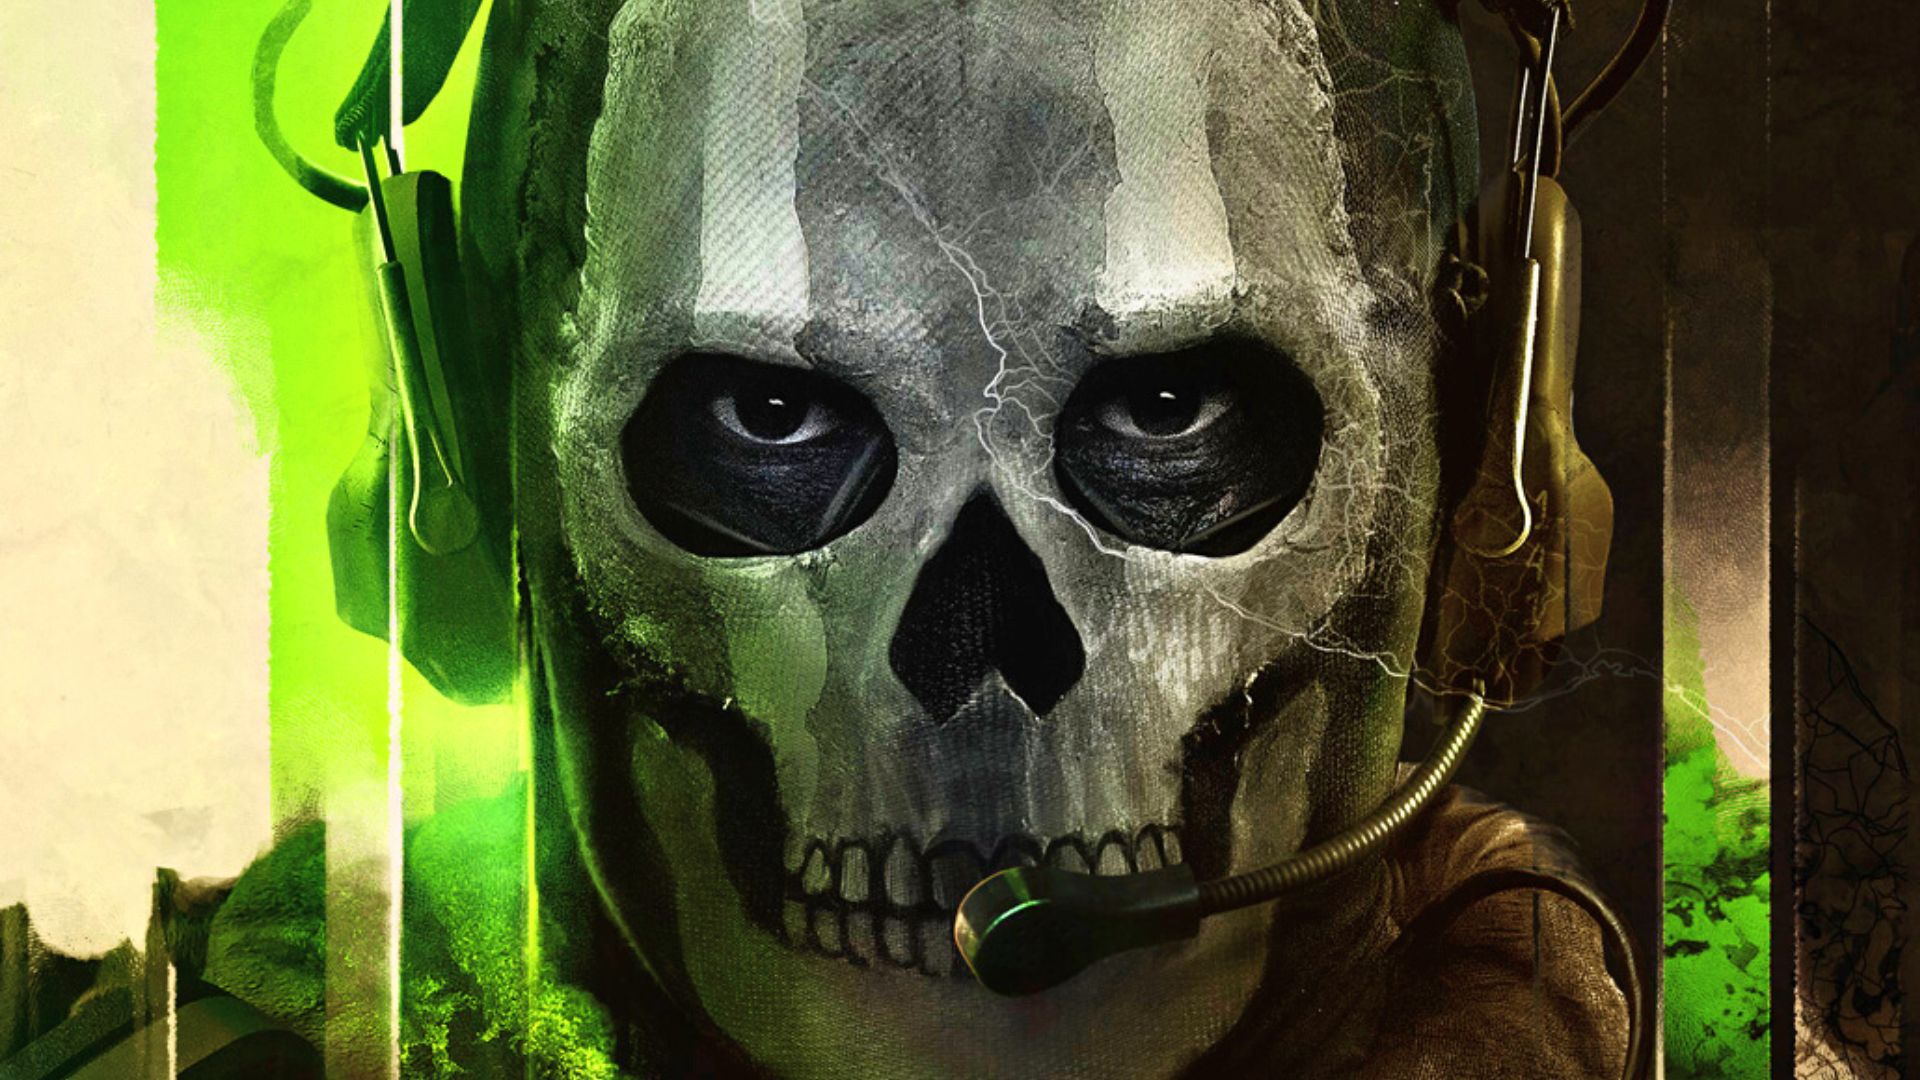 Modern Warfare 2 devs finally fix Ghost minimap bug in Season 3